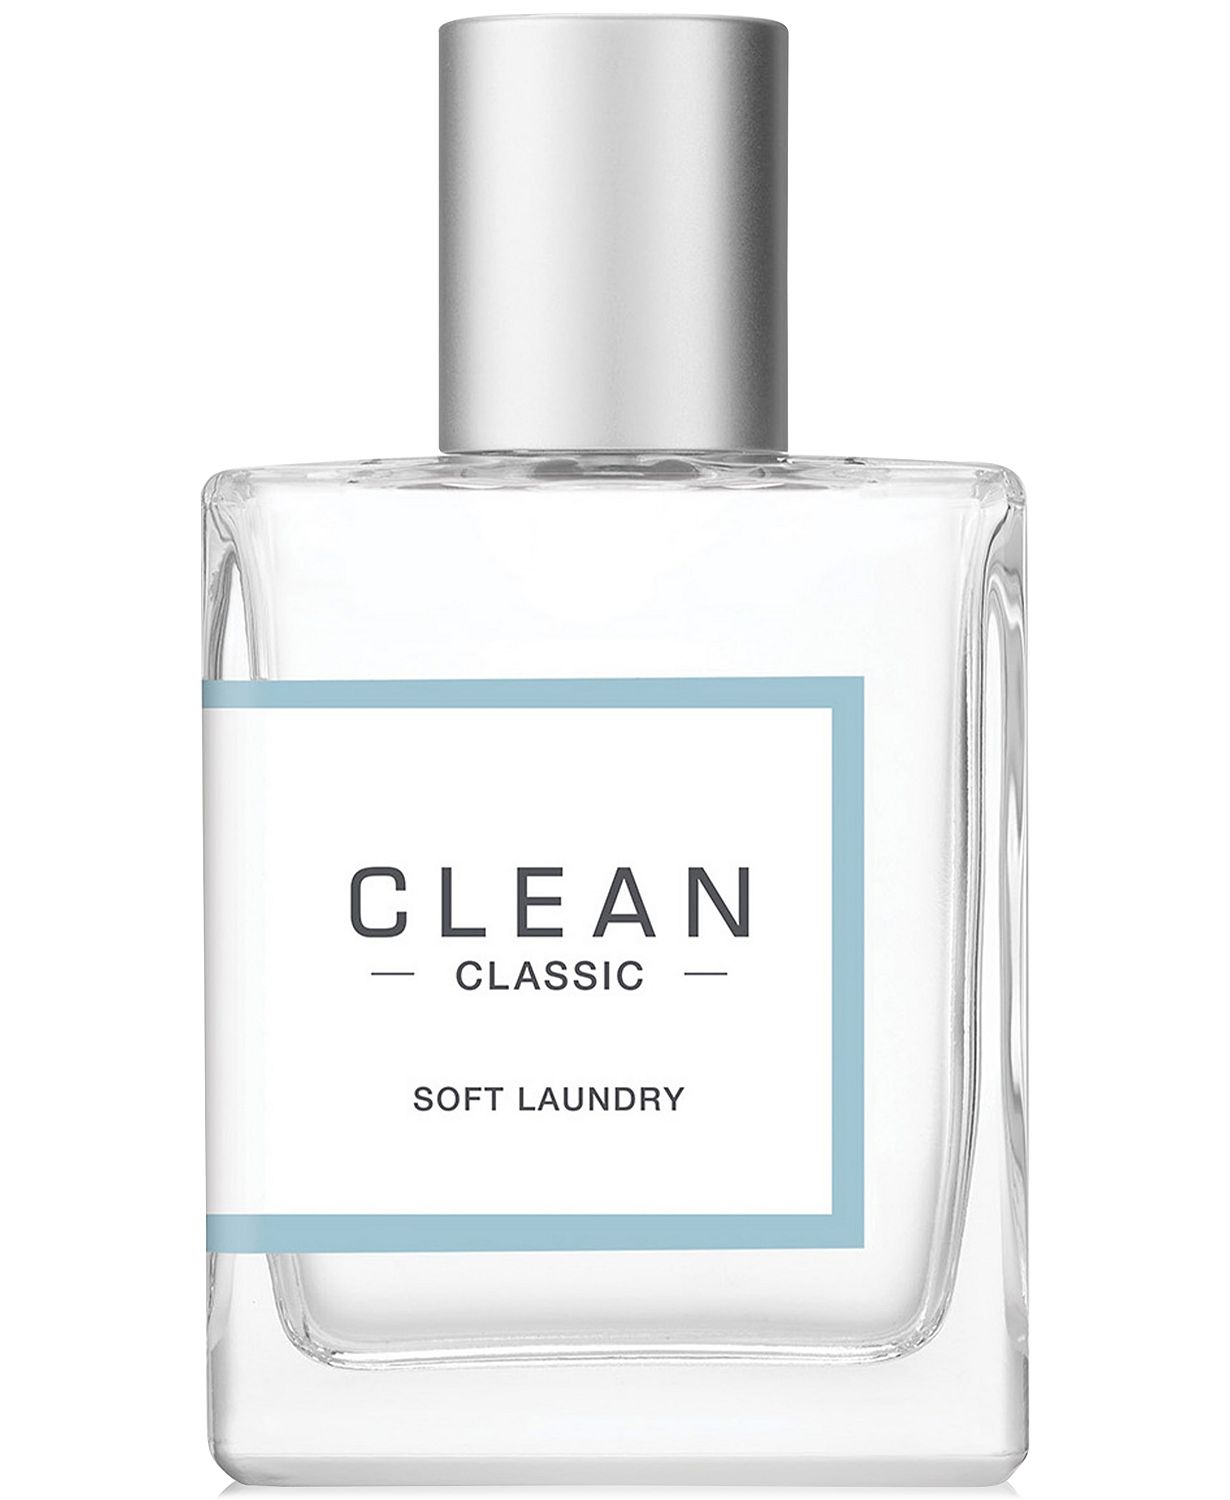 Classic Soft Laundry Eau De Parfum Spray, 2 fl oz